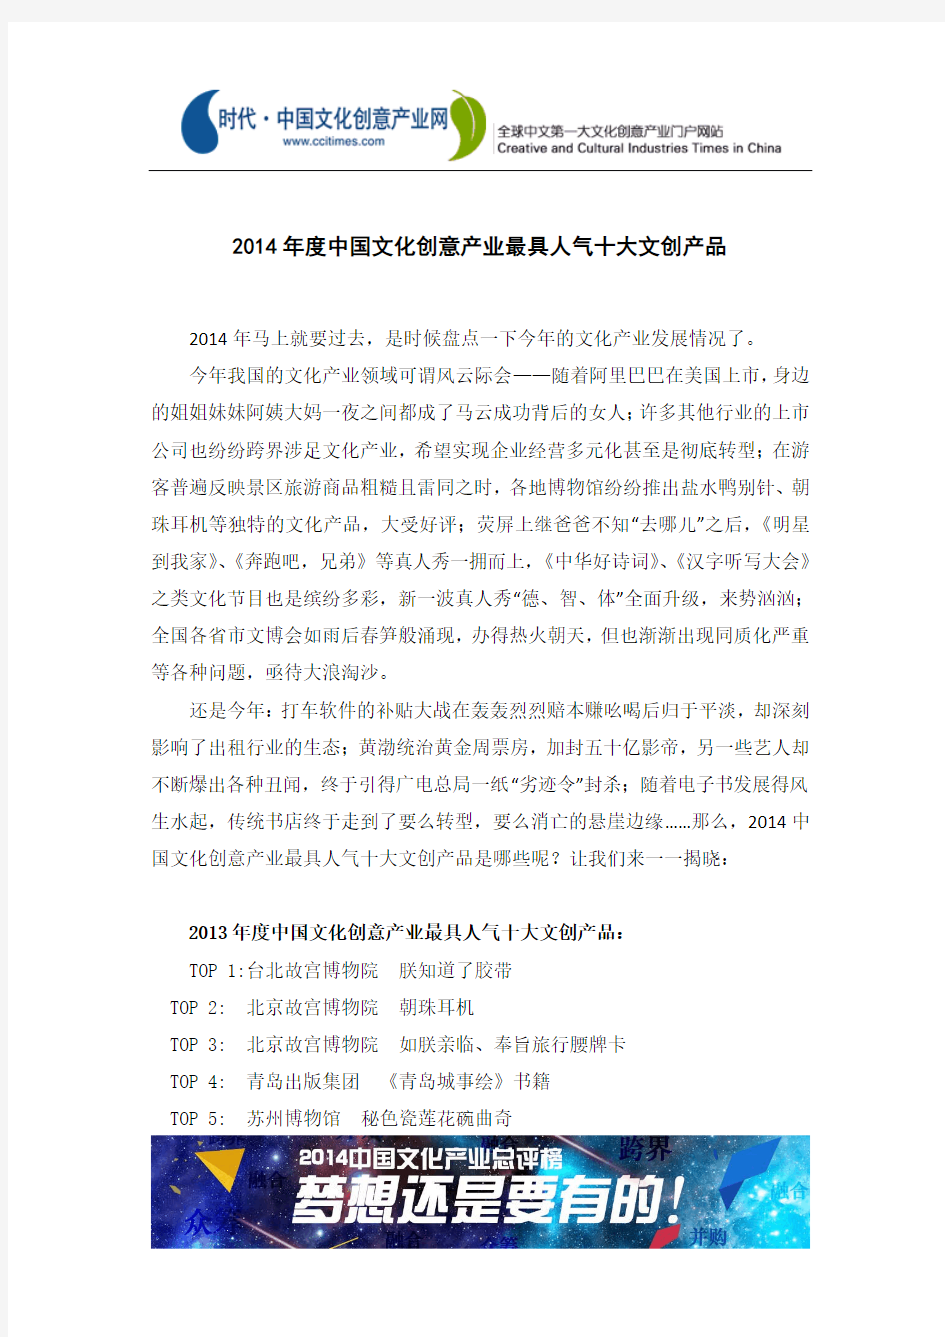 2014年度中国文化创意产业最具人气的十大产品介绍